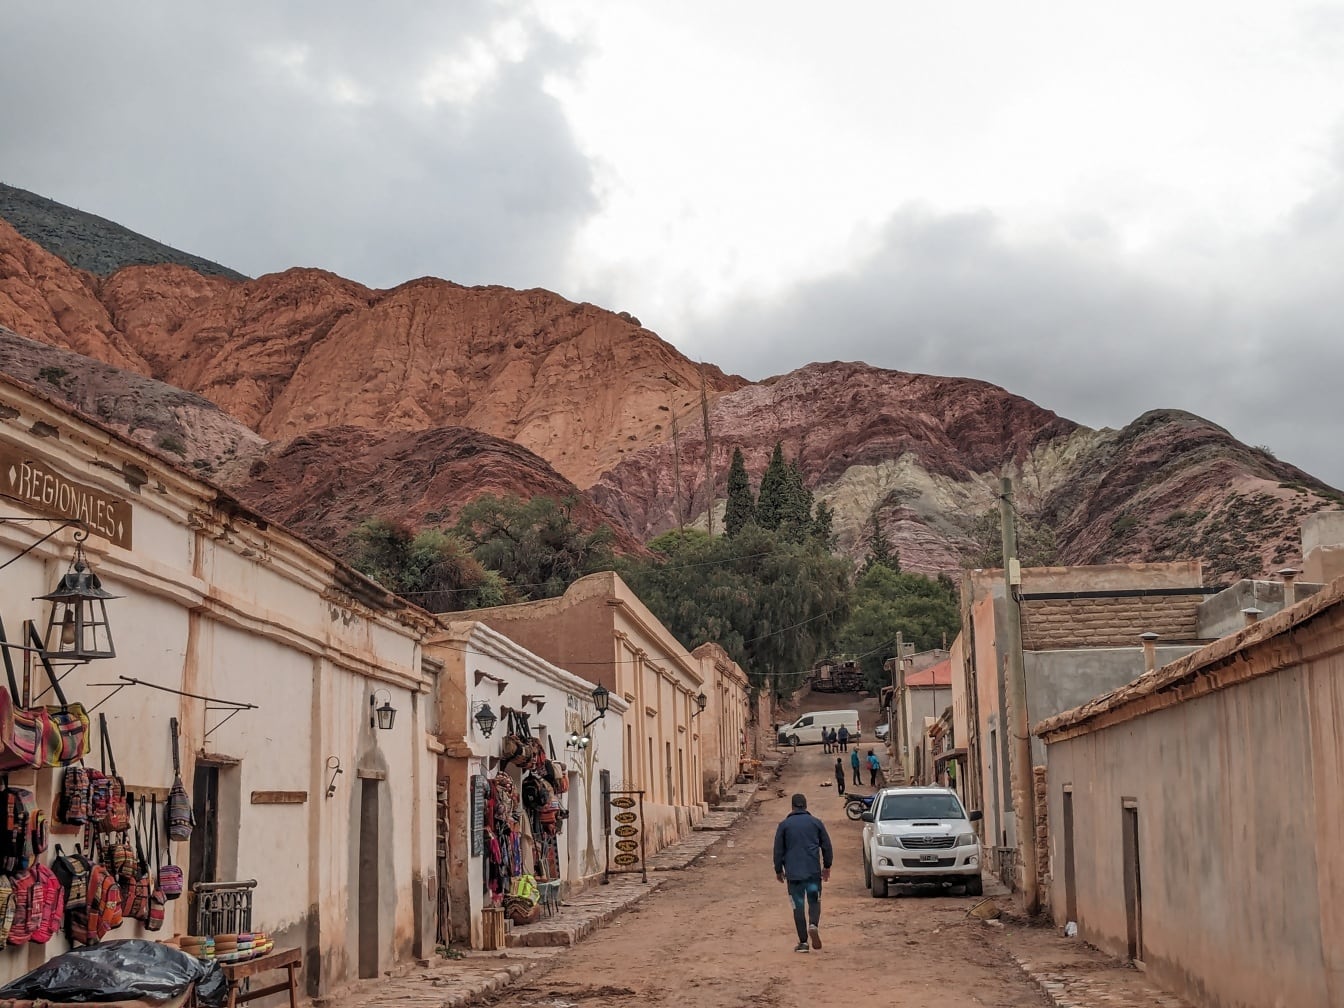 Dân làng đi bộ trên một con đường đất ở ngôi làng nông thôn Purmamarca trong thung lũng núi Andes ở Argentina